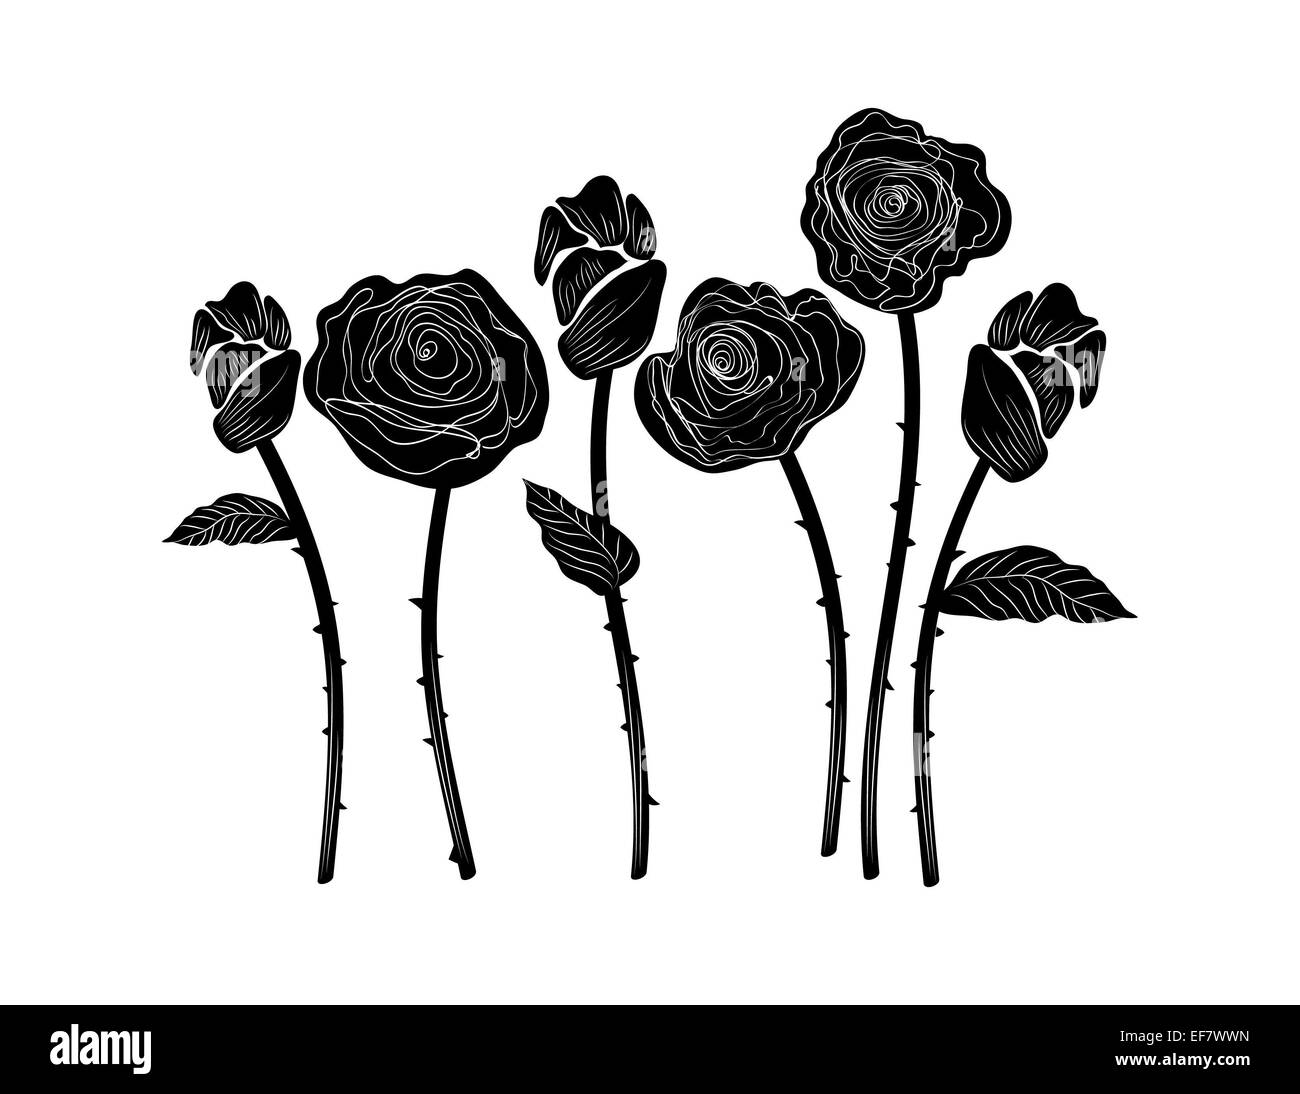 Illustration noir et blanc élégant de six belles roses avec feuilles, tiges et des épines à des fins décoratives et de l'amour motif Banque D'Images